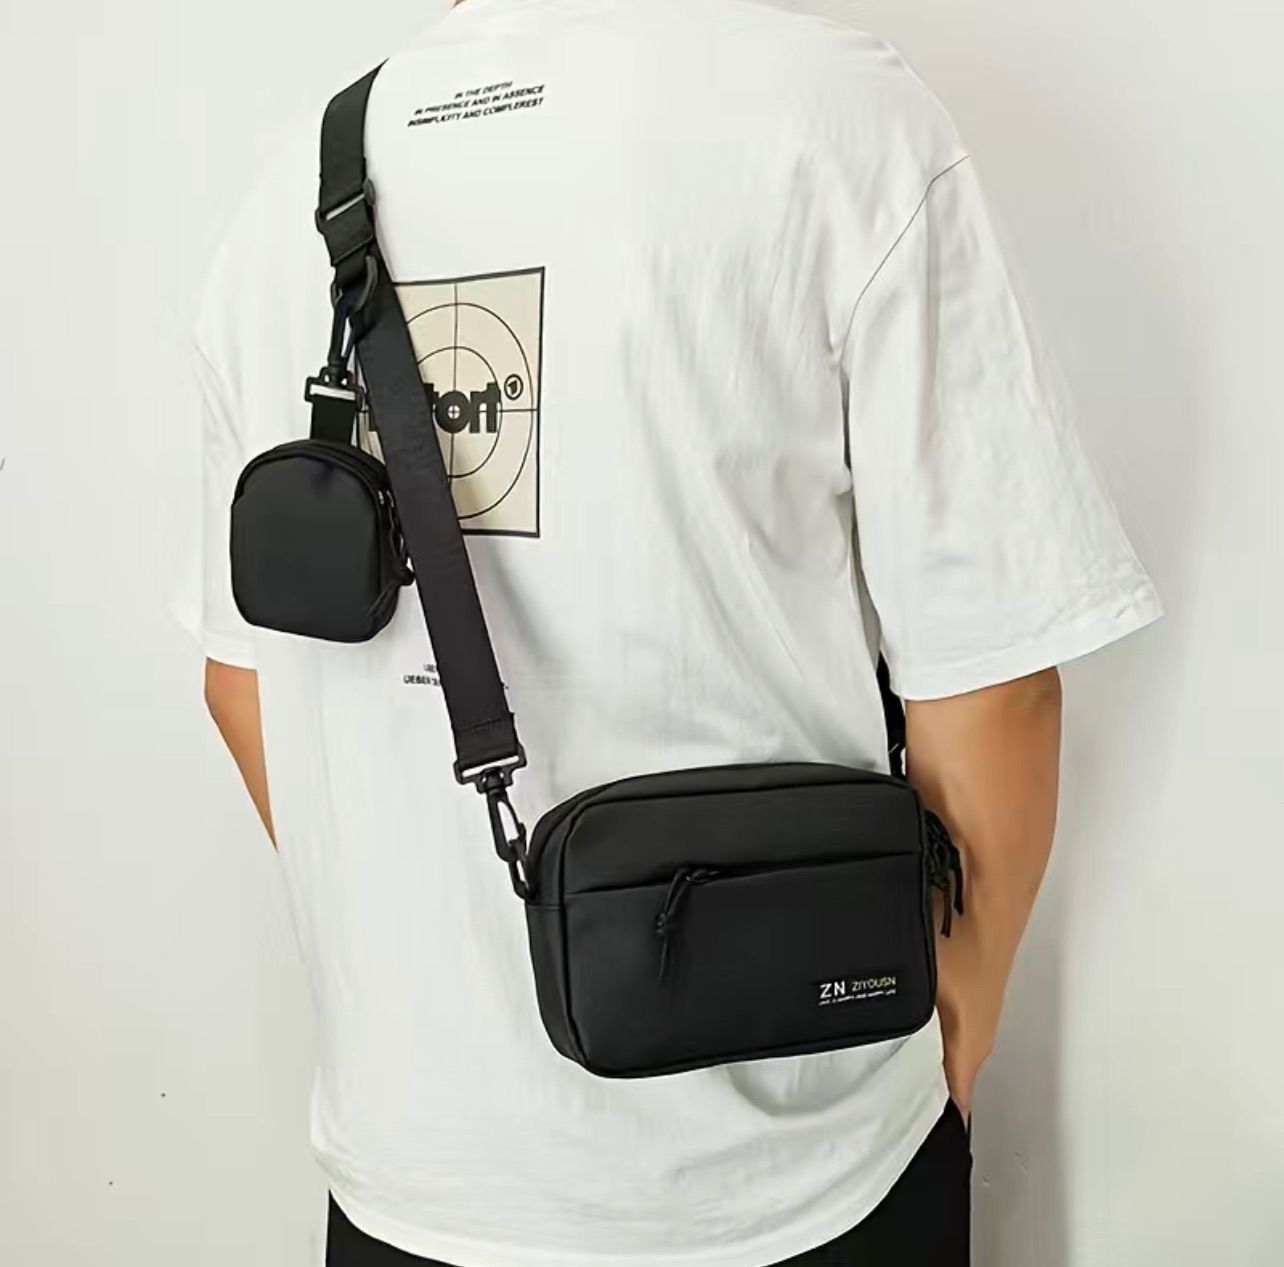 ファッションベルトバッグ、メンズクロスボディバッグカジュアルショルダーバッグ、小さなポーチ付き、ハイキング、サイクリング、ウォーキング、旅行用の携帯電話バッグ(黒)